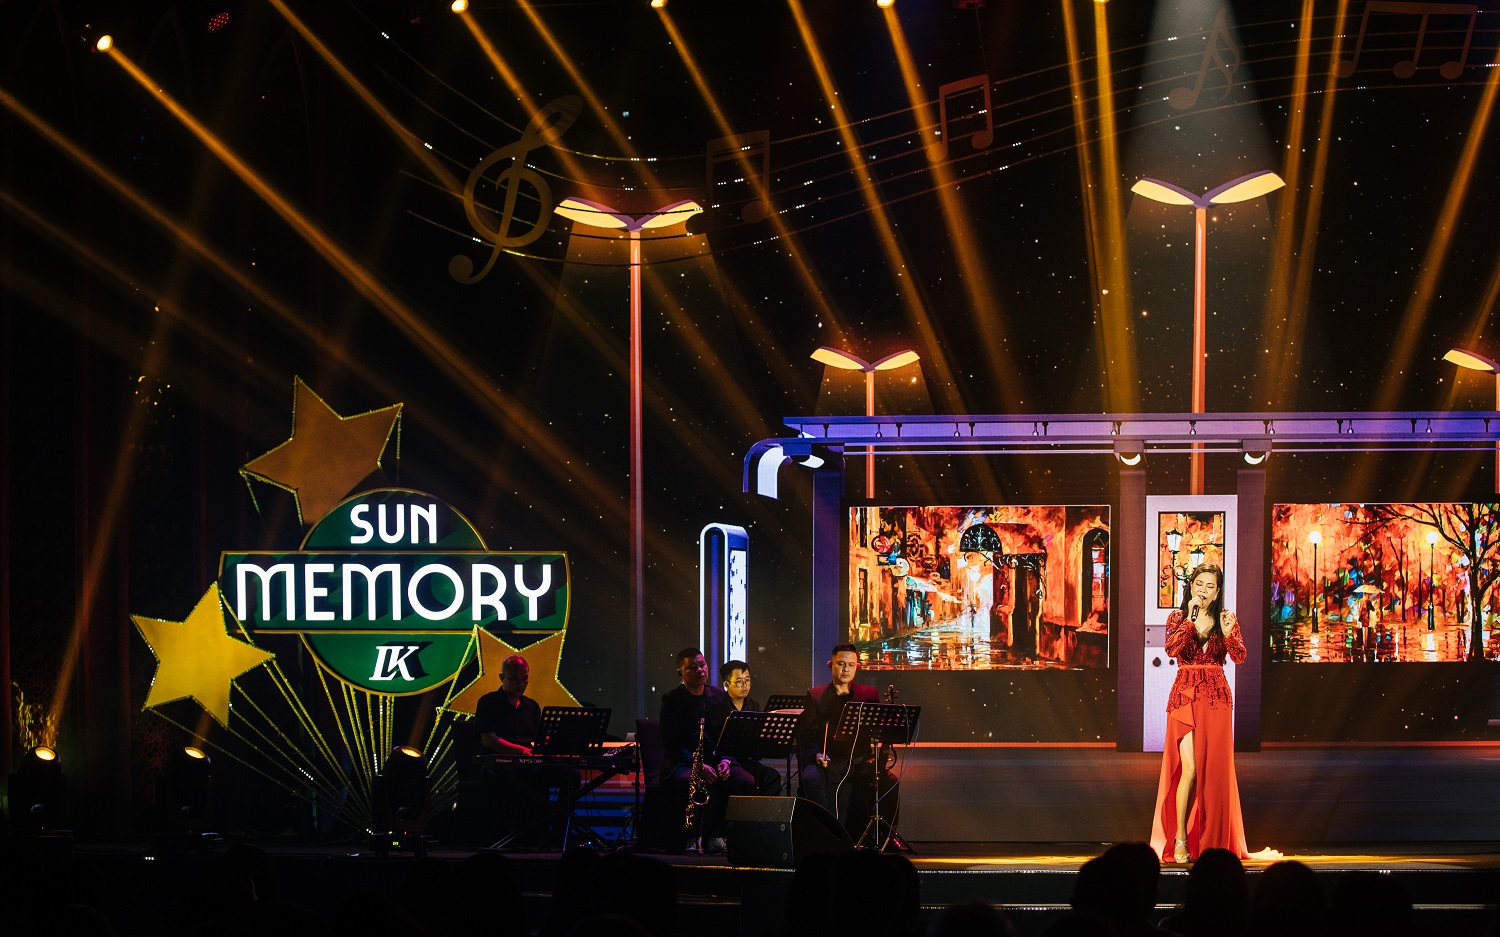 Đêm nhạc Sun Memory Vol.2 là một phần trong hành trình trải nghiệm Phú Quốc mà Sun Property dành tặng khách mời